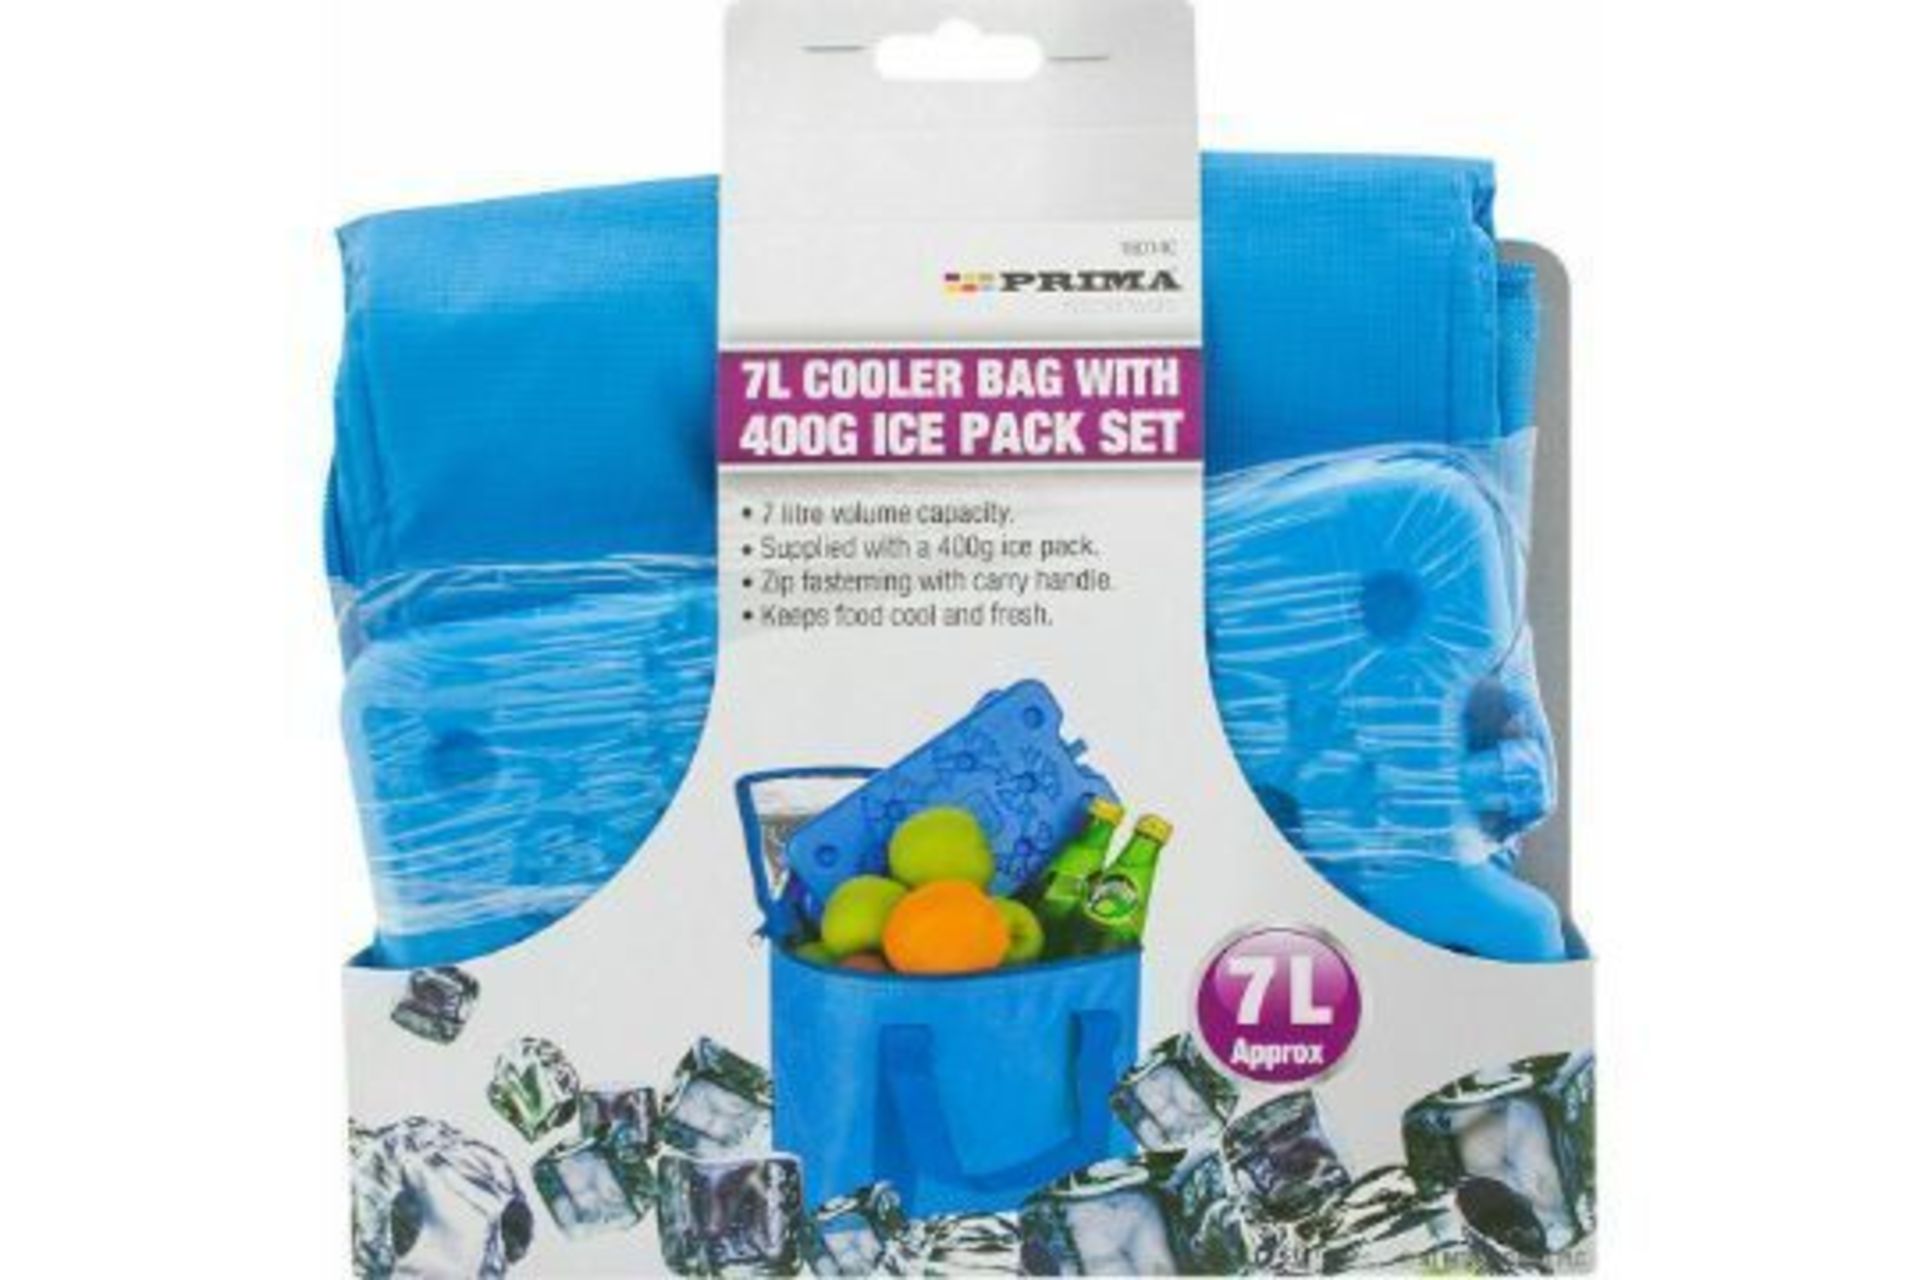 New Prima 7L Cooler Bag 400g Ice Pack Set